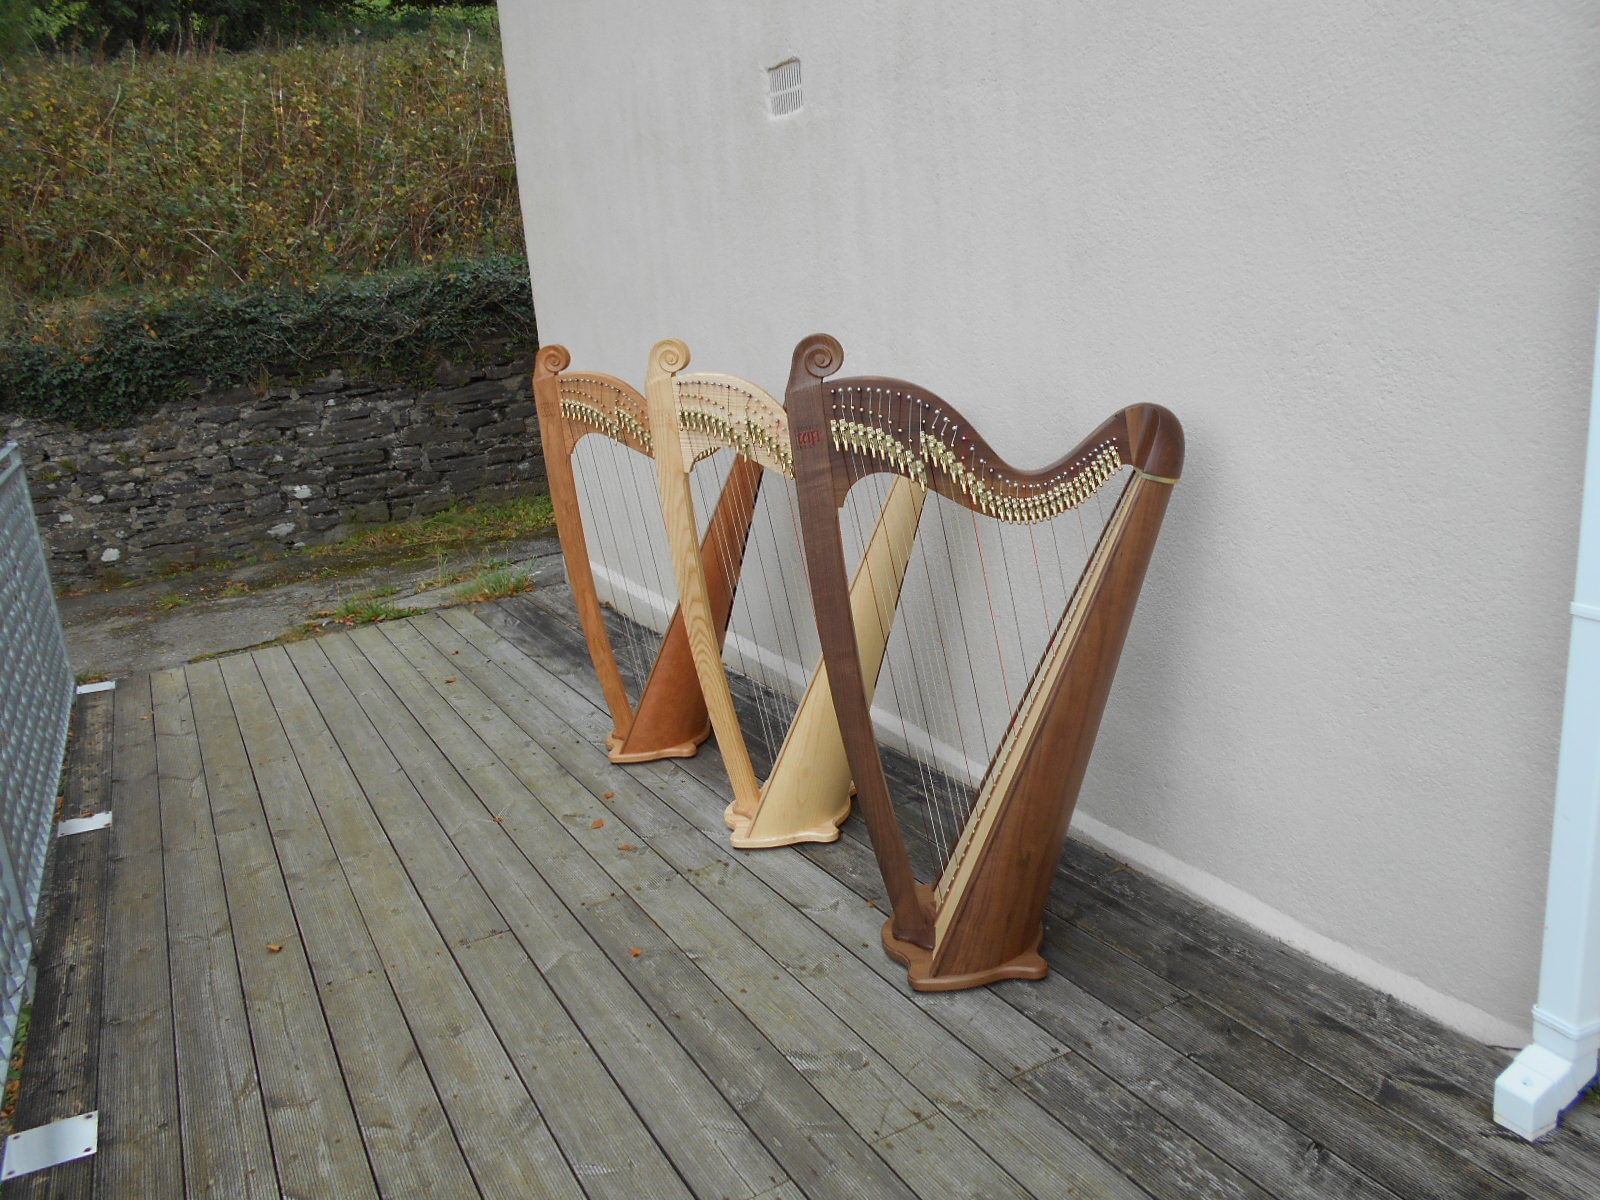 Japan harps